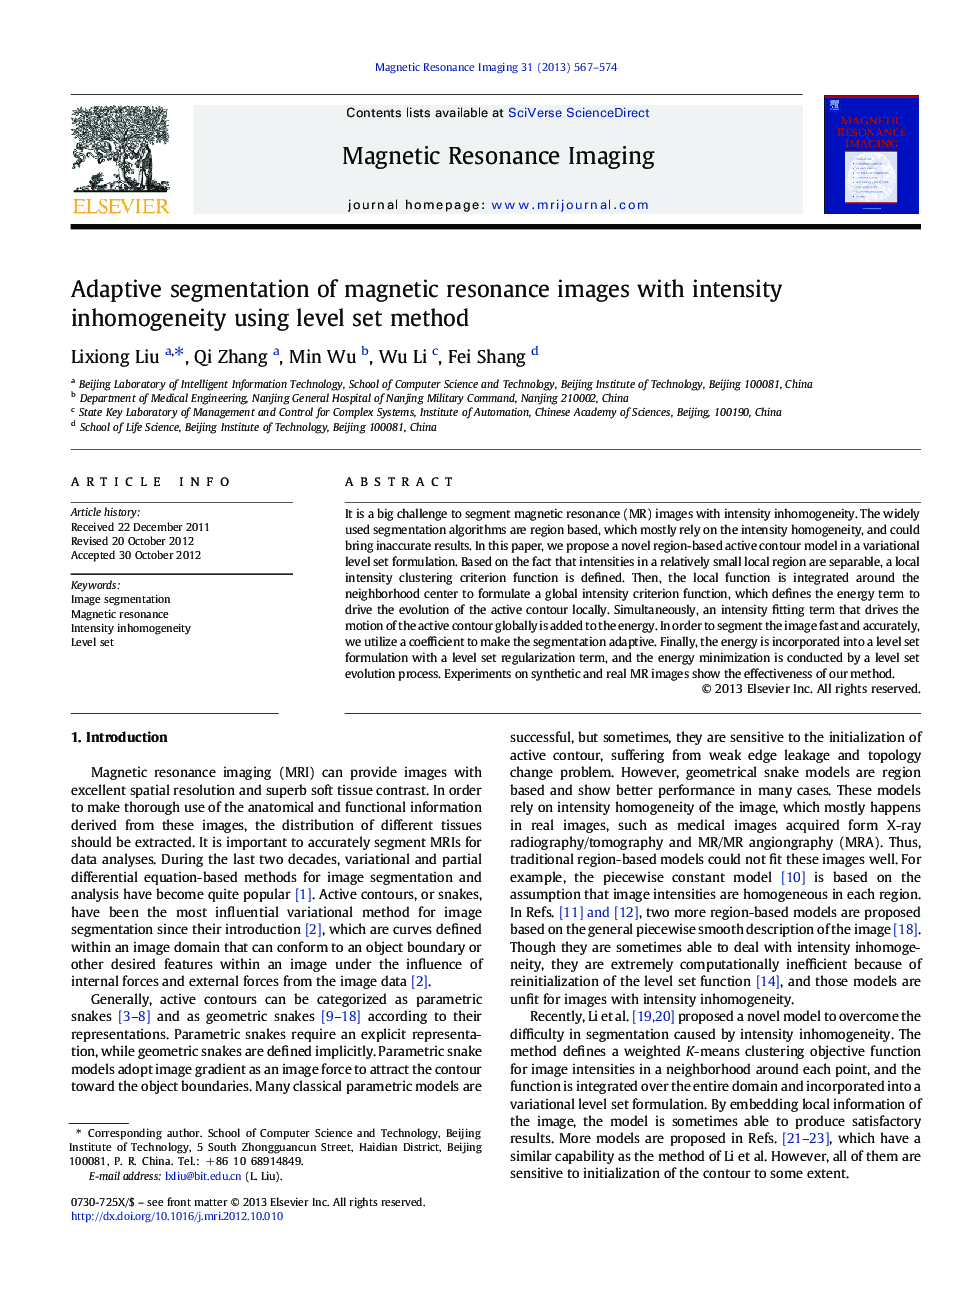 Adaptive segmentation of magnetic resonance images with intensity inhomogeneity using level set method